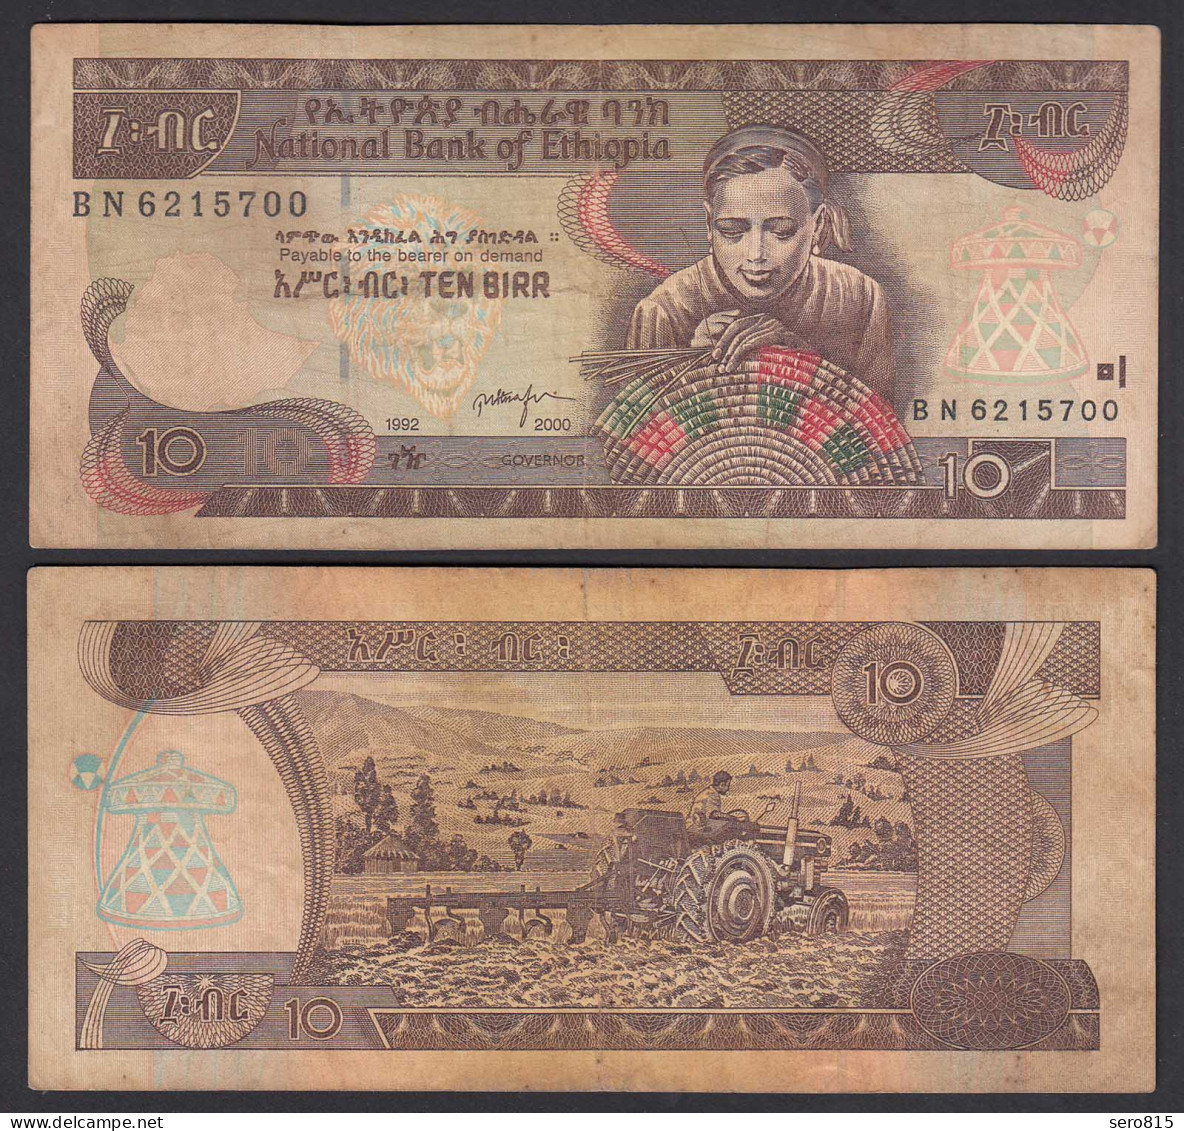 Äthiopien - Ethiopia 10 Birr (2000) Banknote Pick 48b F (4)  (25134 - Sonstige – Asien